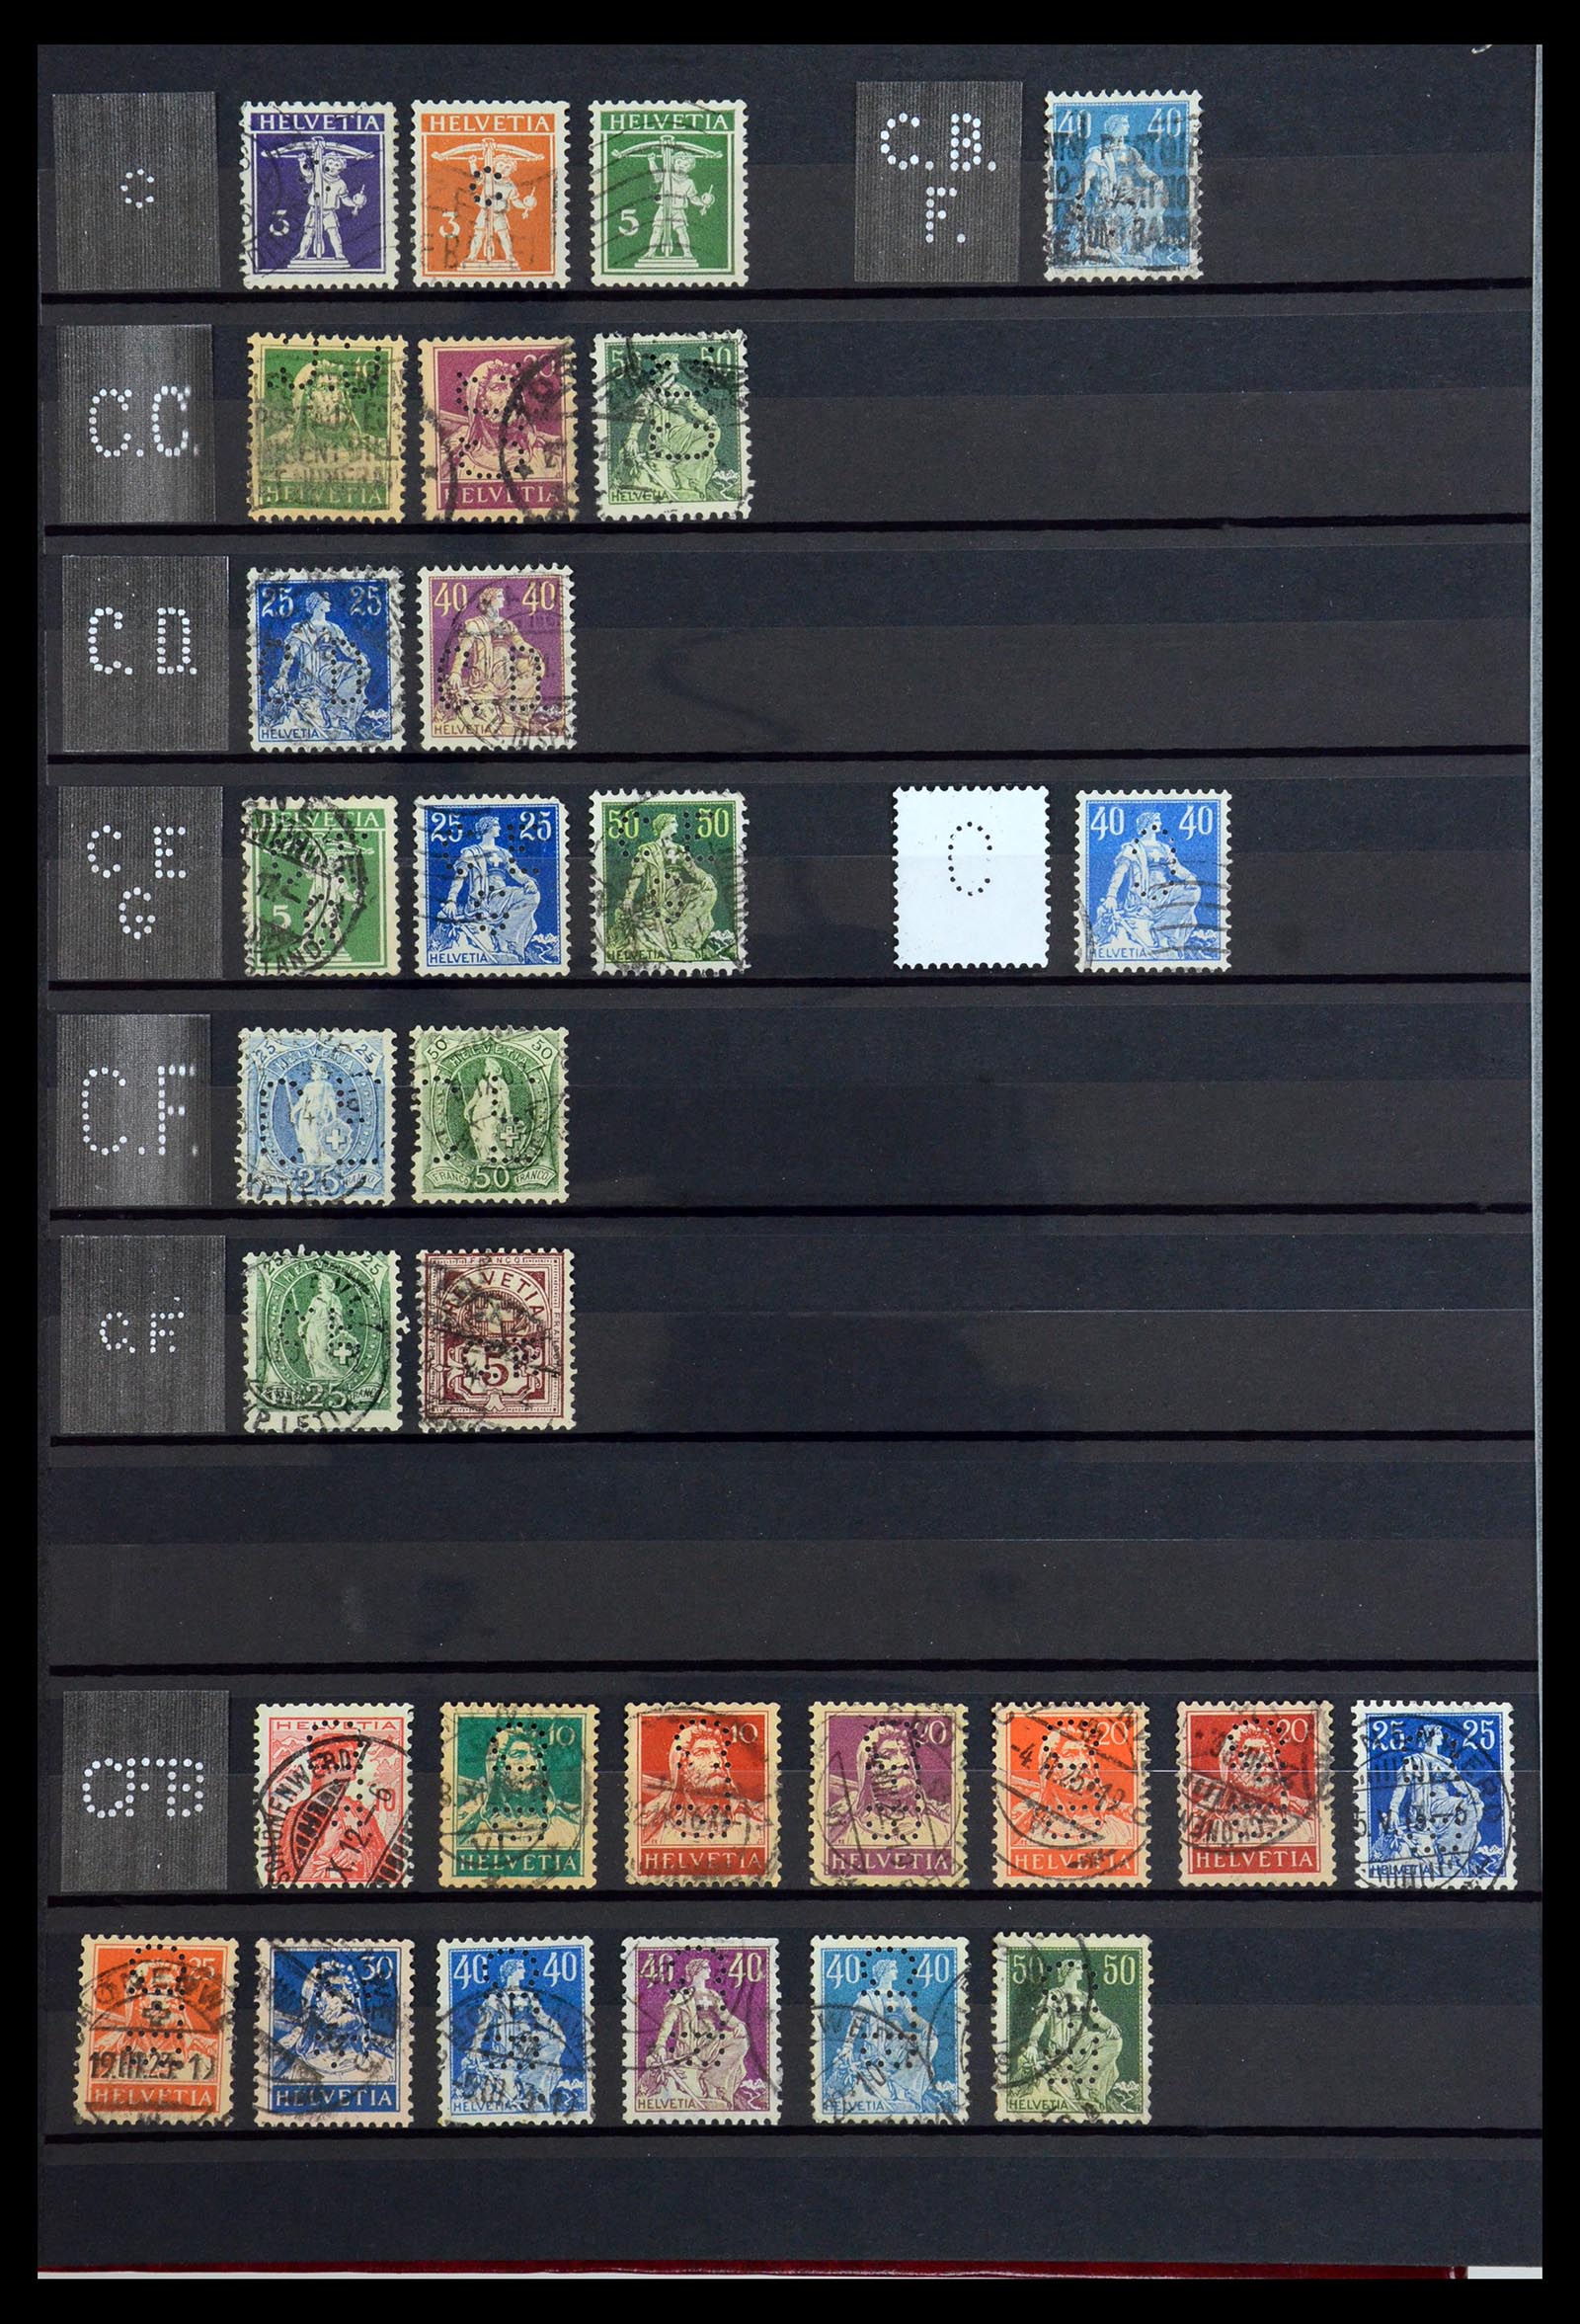 36372 010 - Stamp collection 36372 Switzerland perfins 1880-1960.